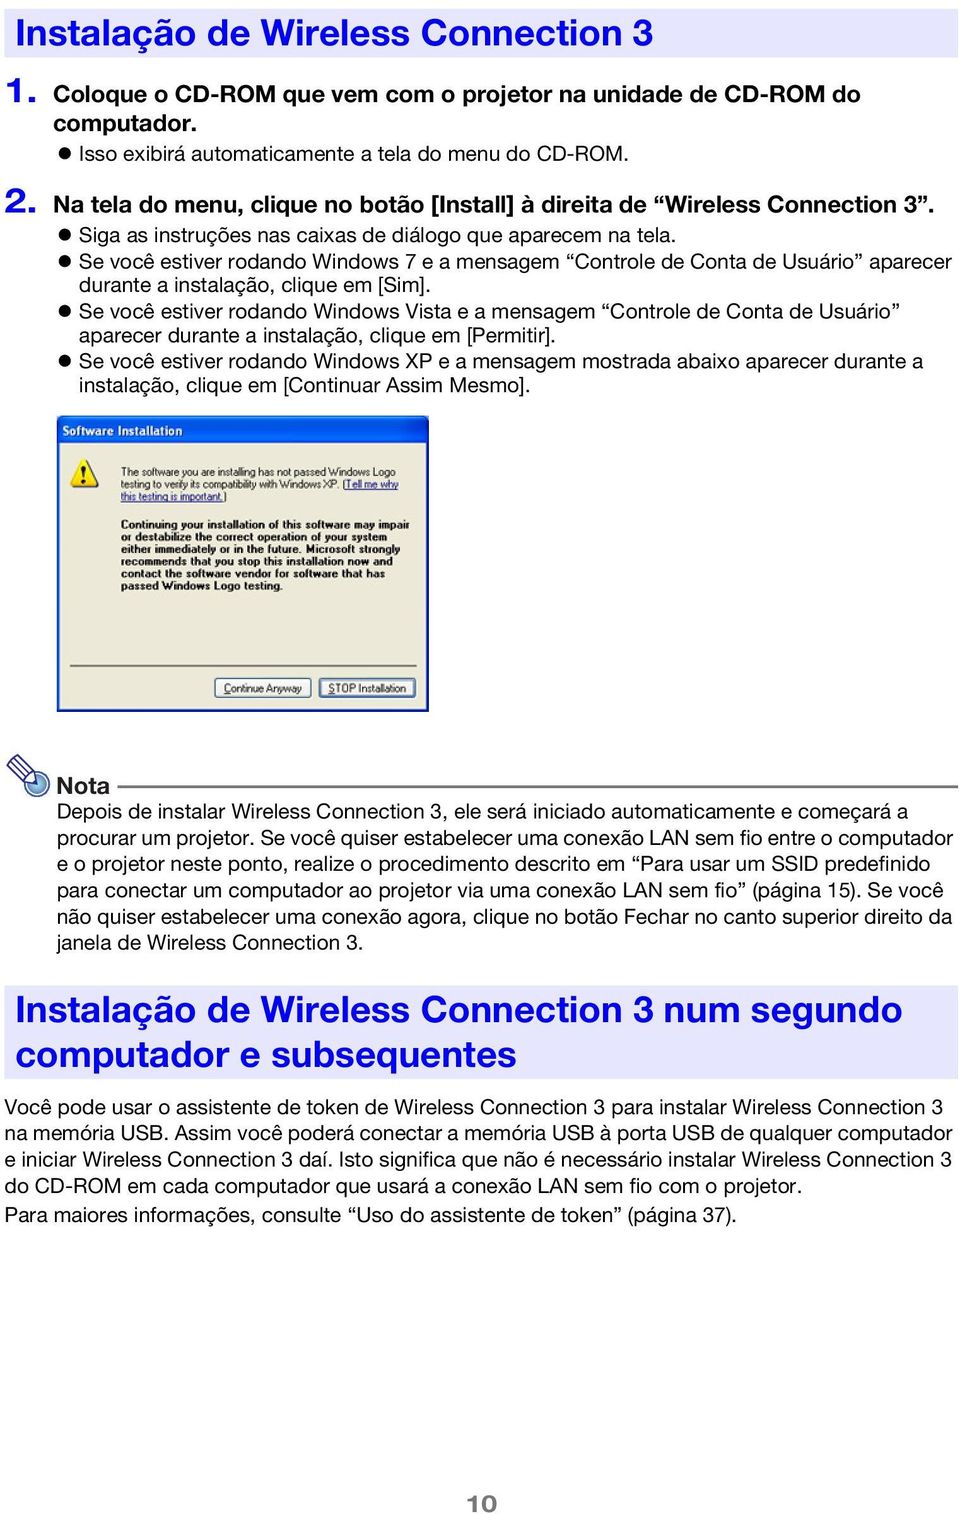 Se você estiver rodando Windows 7 e a mensagem Controle de Conta de Usuário aparecer durante a instalação, clique em [Sim].